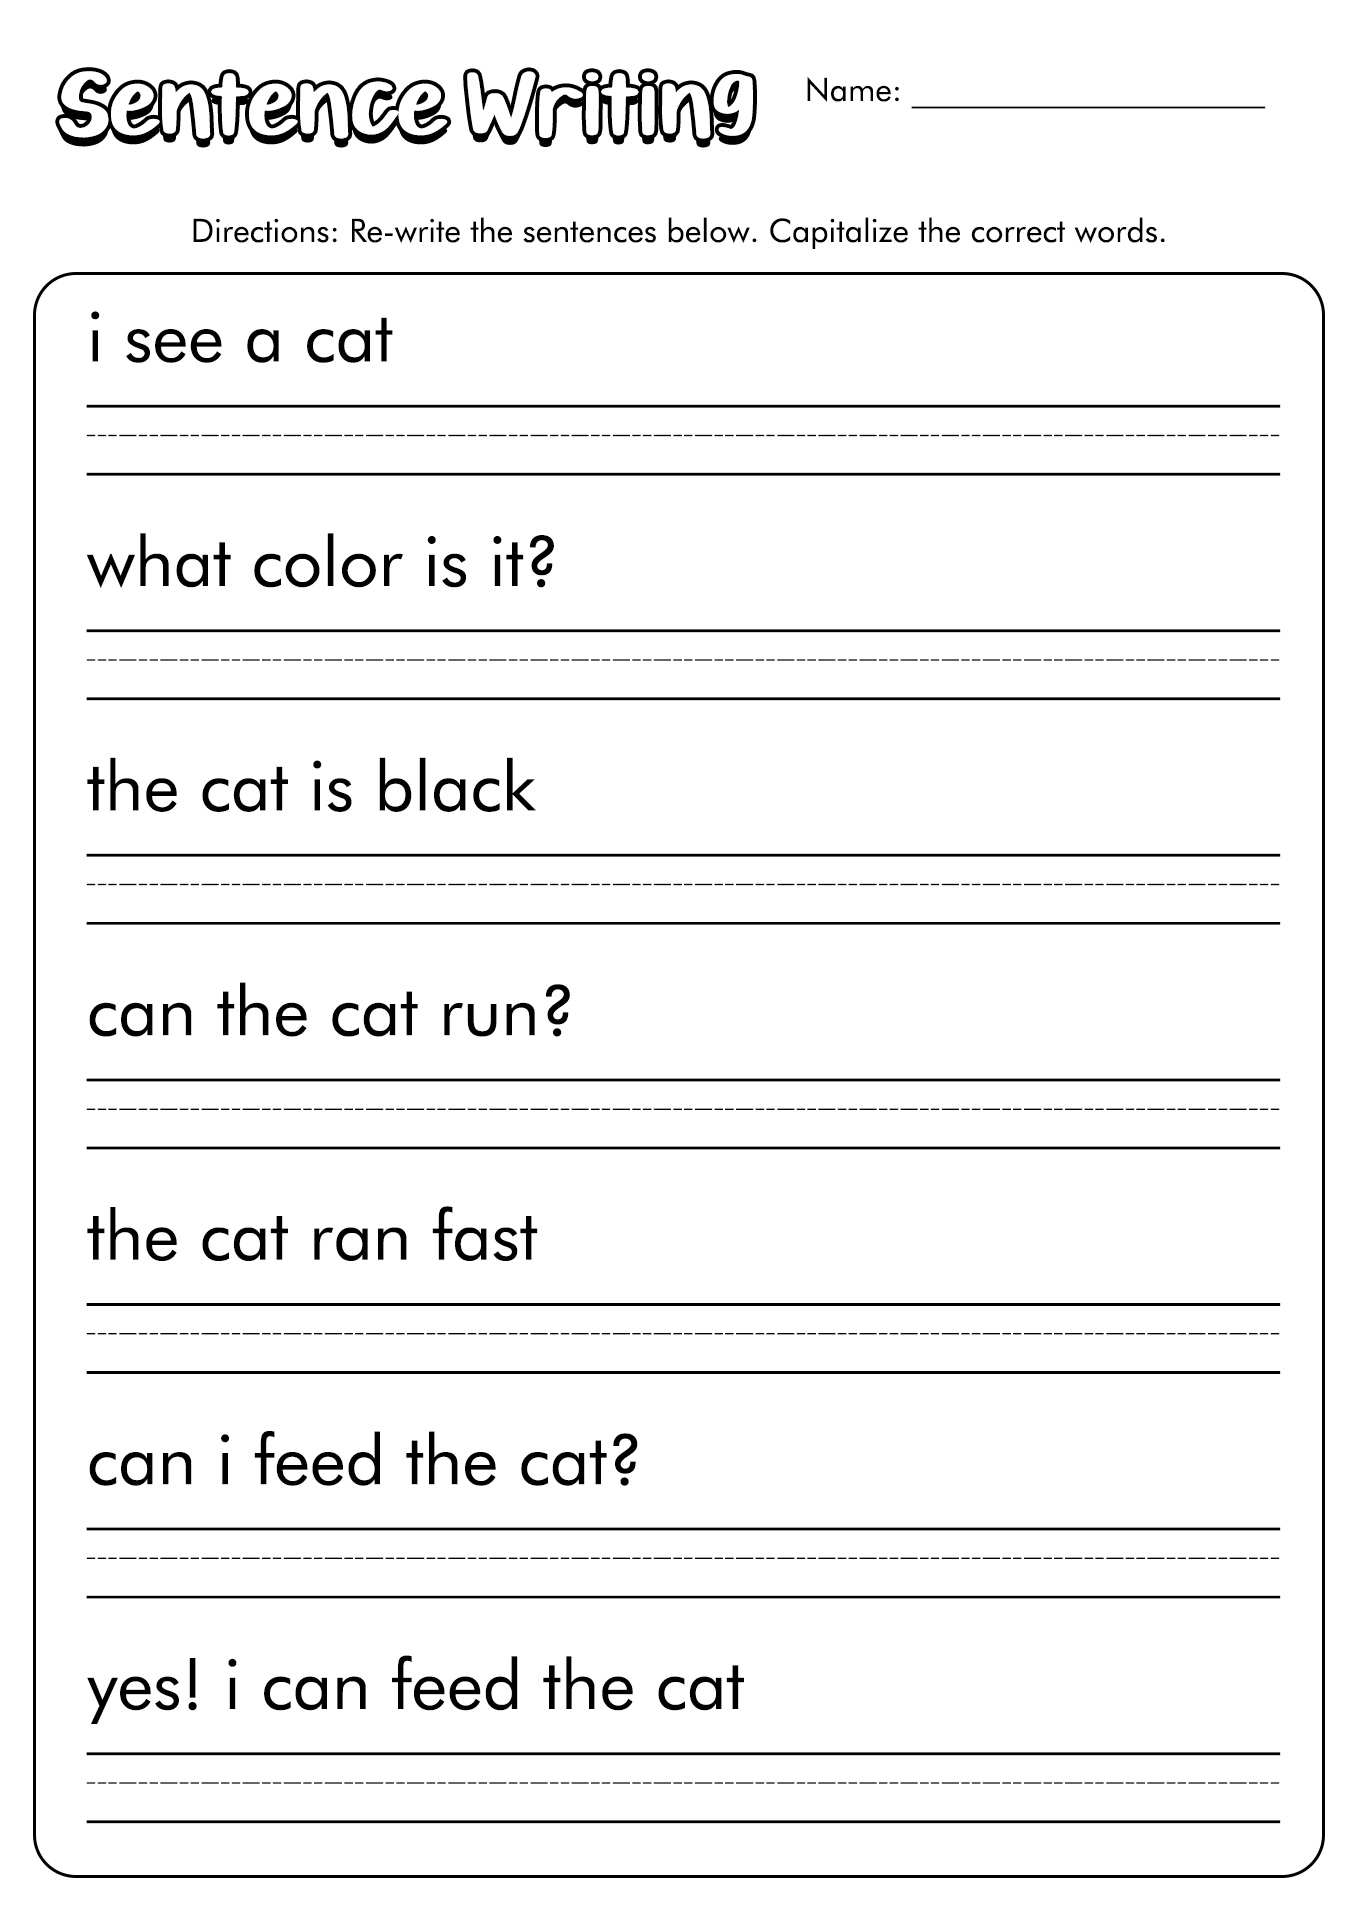 Kindergarten Sentence Worksheets